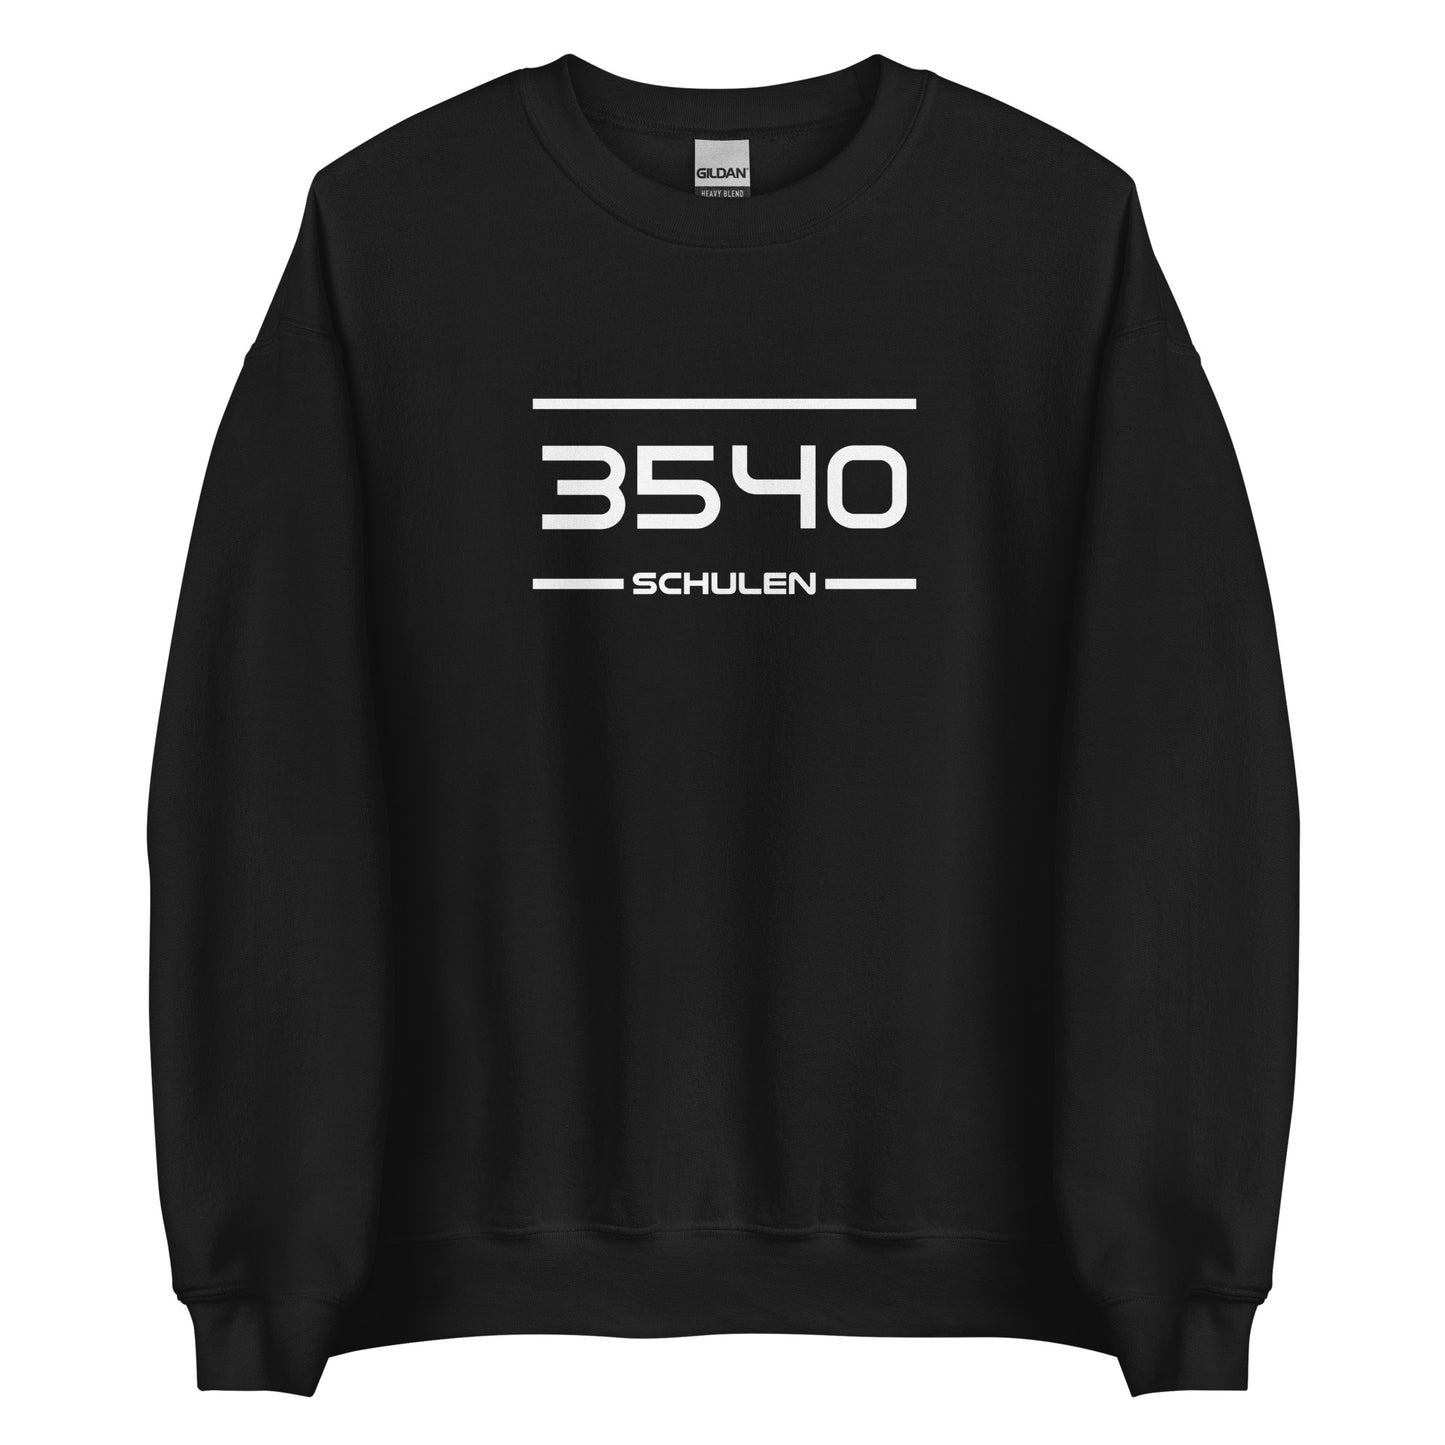 Sweater - 3540 - Schulen (M/V)